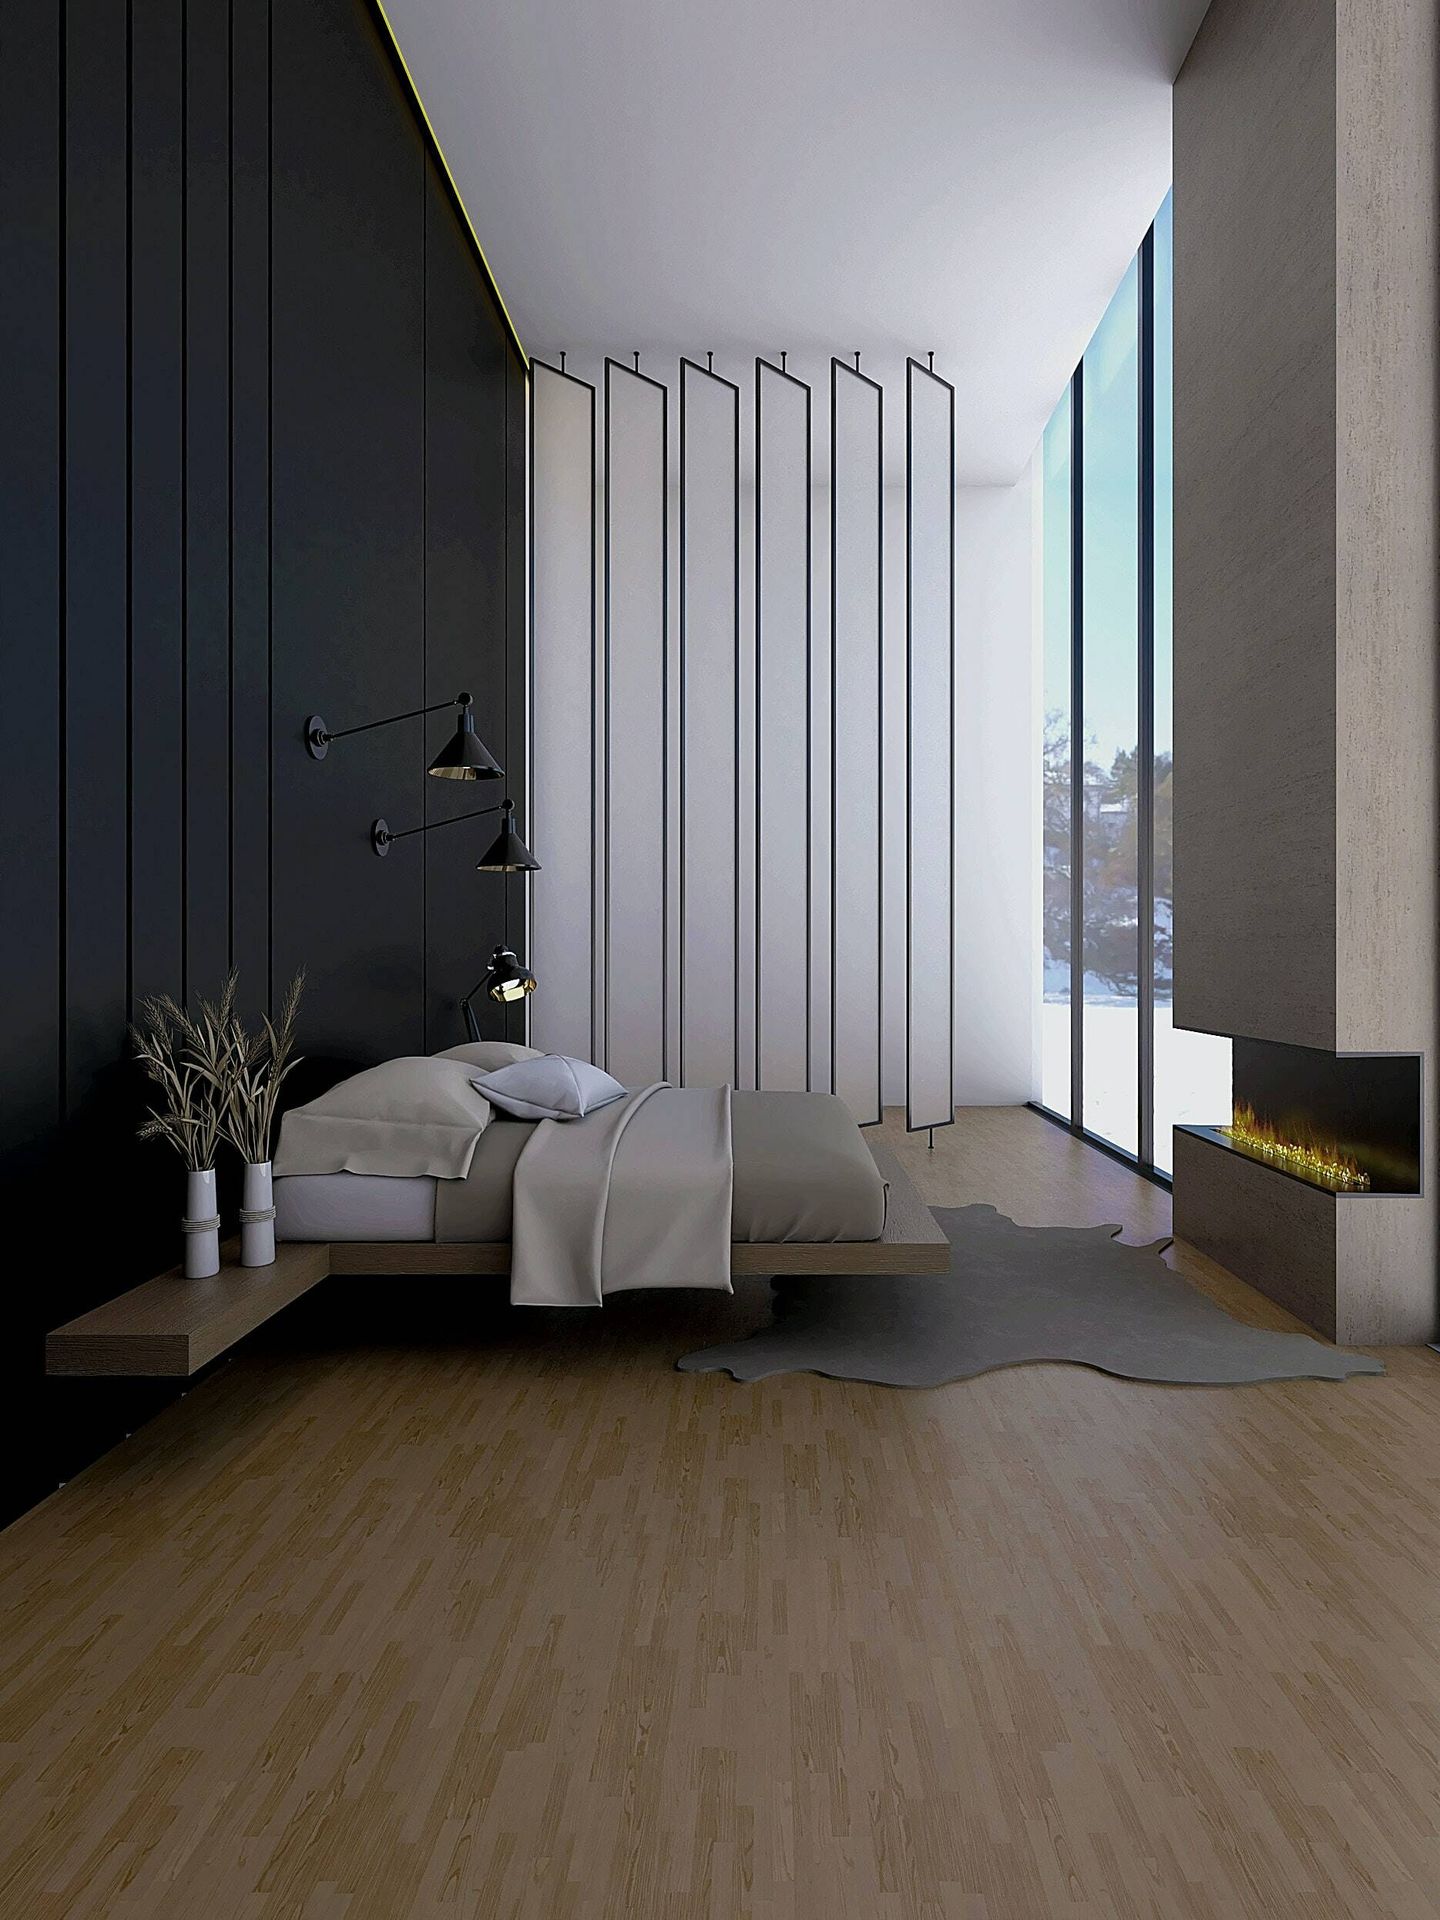 Color negro para un dormitorio sofisticado. (Unsplash/Billy Jo Catbagan)